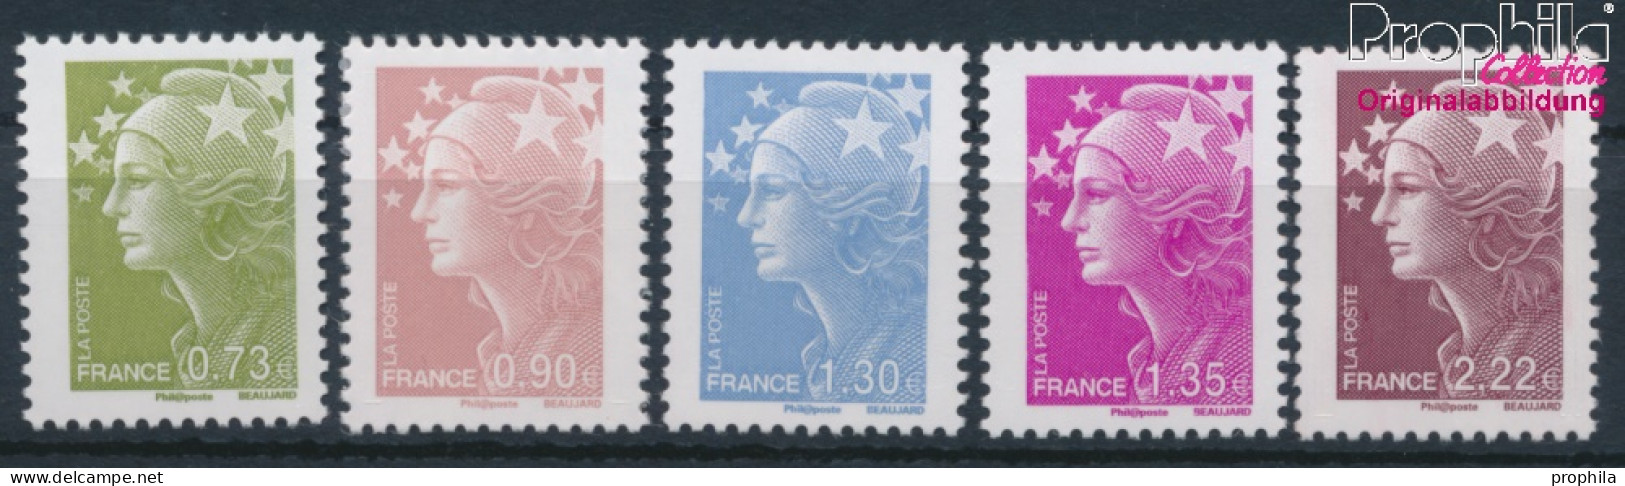 Frankreich 4608I-4612I (kompl.Ausg.) Postfrisch 2009 Freimarken. Marianne (10391287 - Ungebraucht